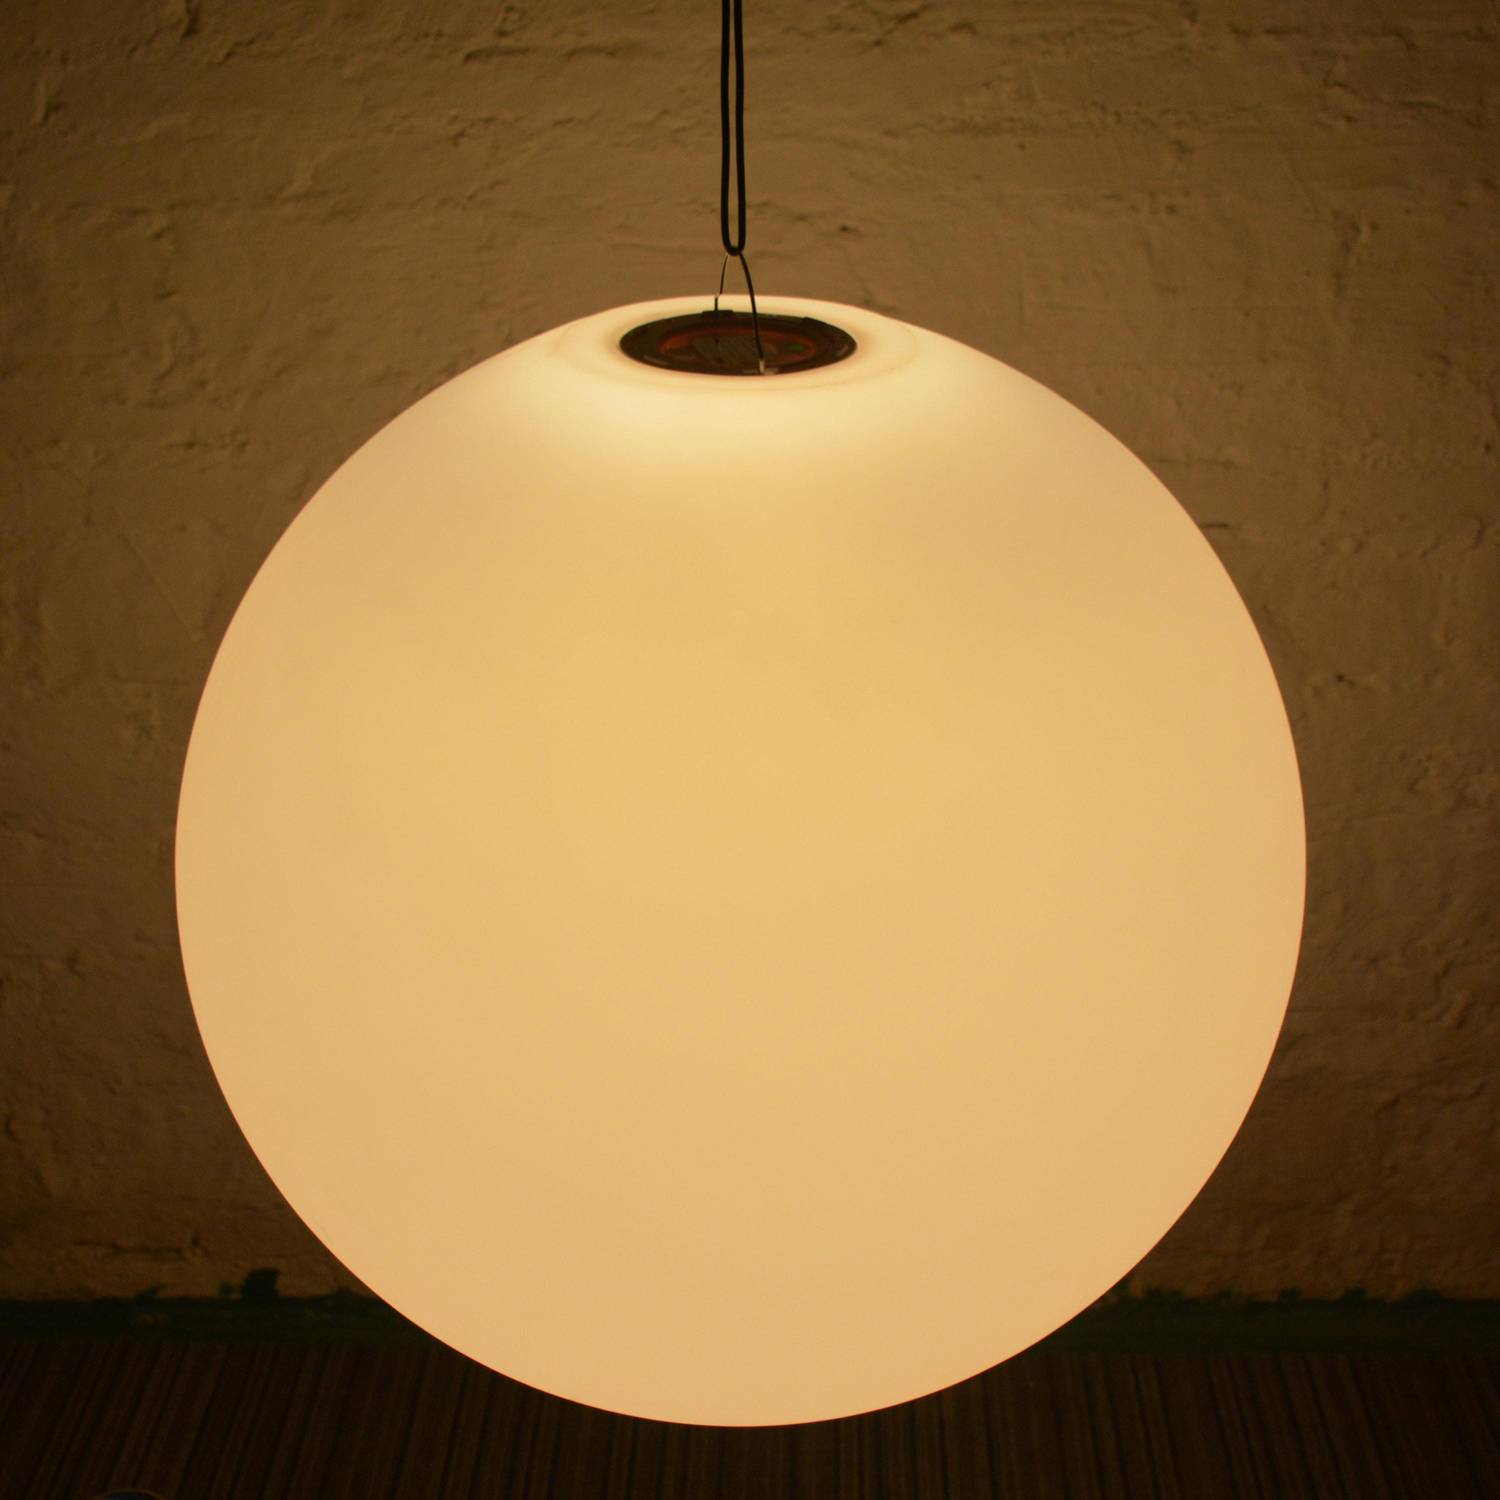 LED Bollamp 40cm – Decoratieve lichtbol, Ø40cm, warm wit, afstandsbediening Photo7